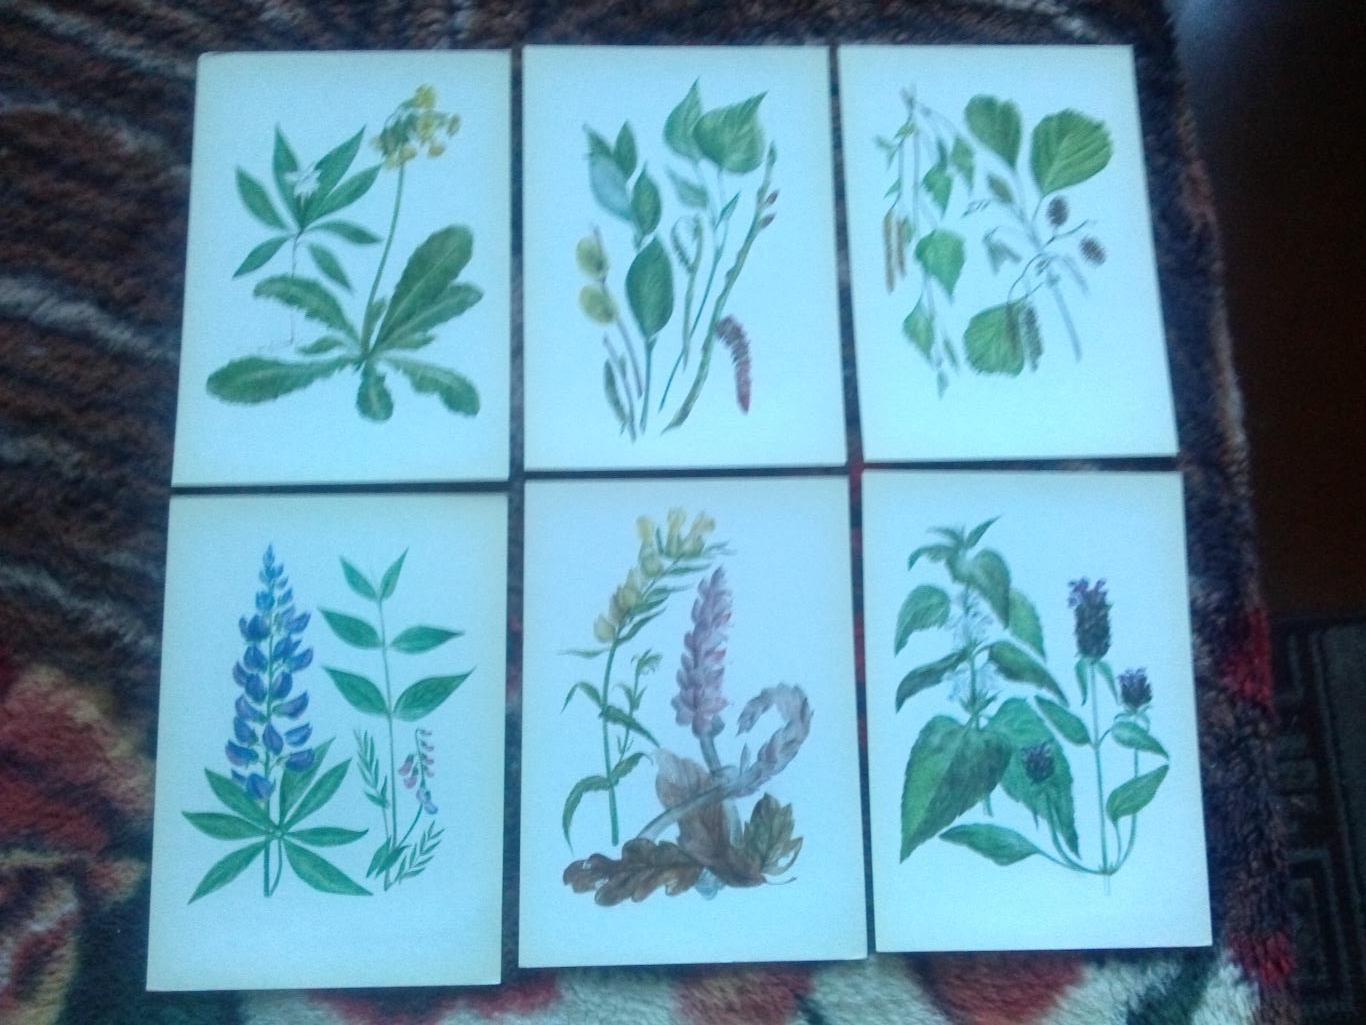 Юному ботанику 1980 г. полный набор - 32 открытки (чистые) Растения Флора 6